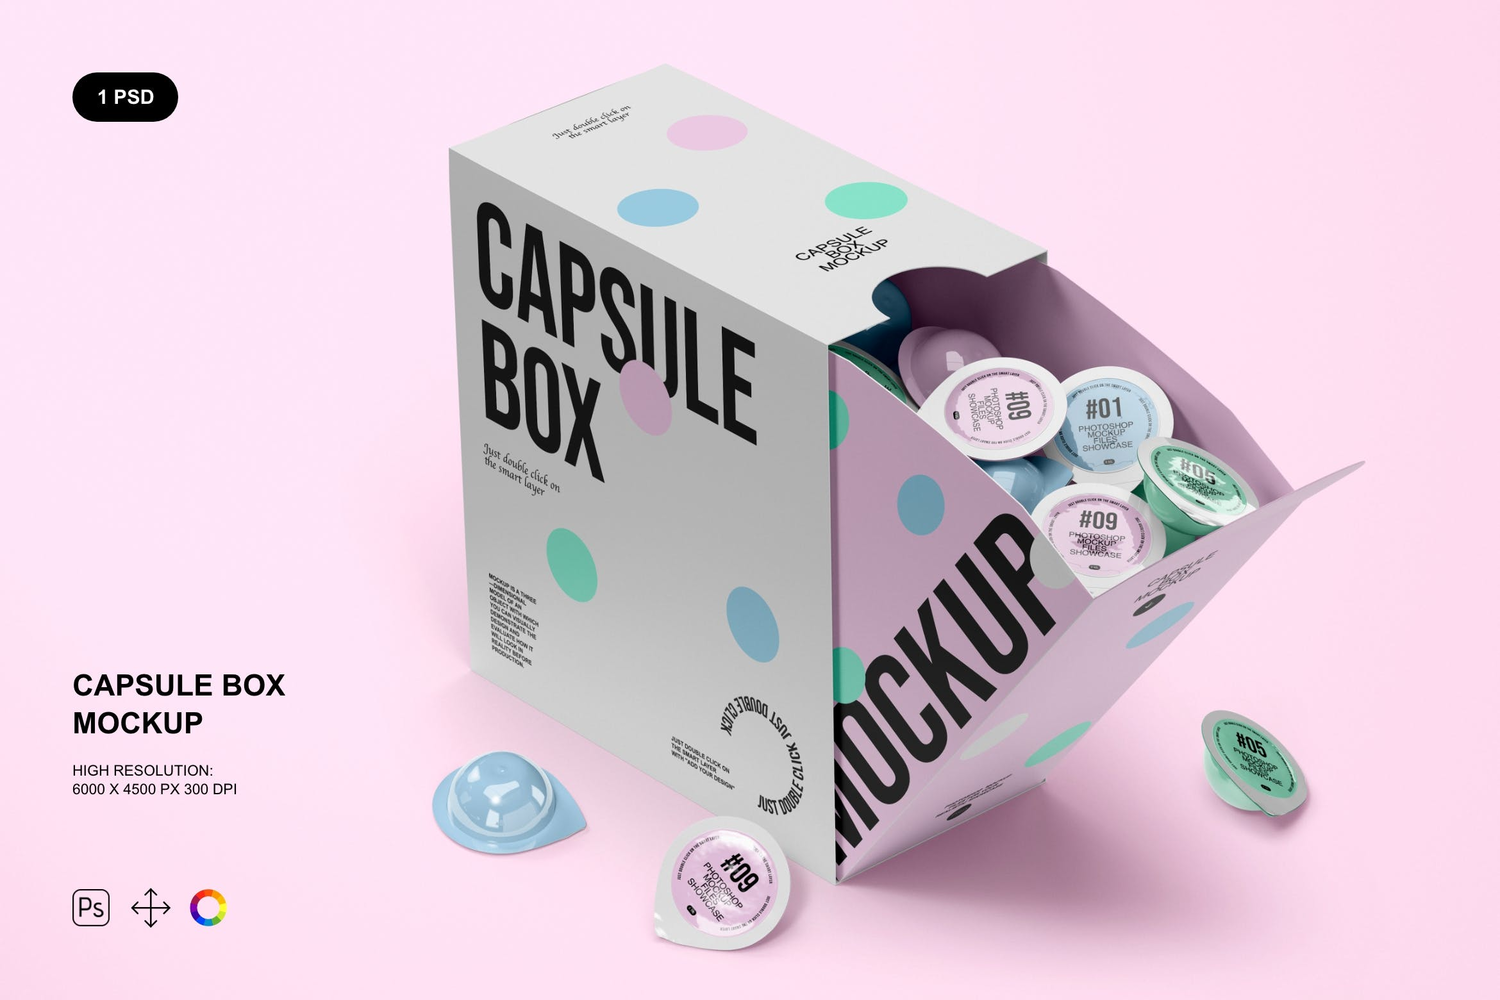 4221 咖啡胶囊盒品牌推广展示ps包装样机素材设计mockup模板 Capsule Box Mockup@GOOODME.COM